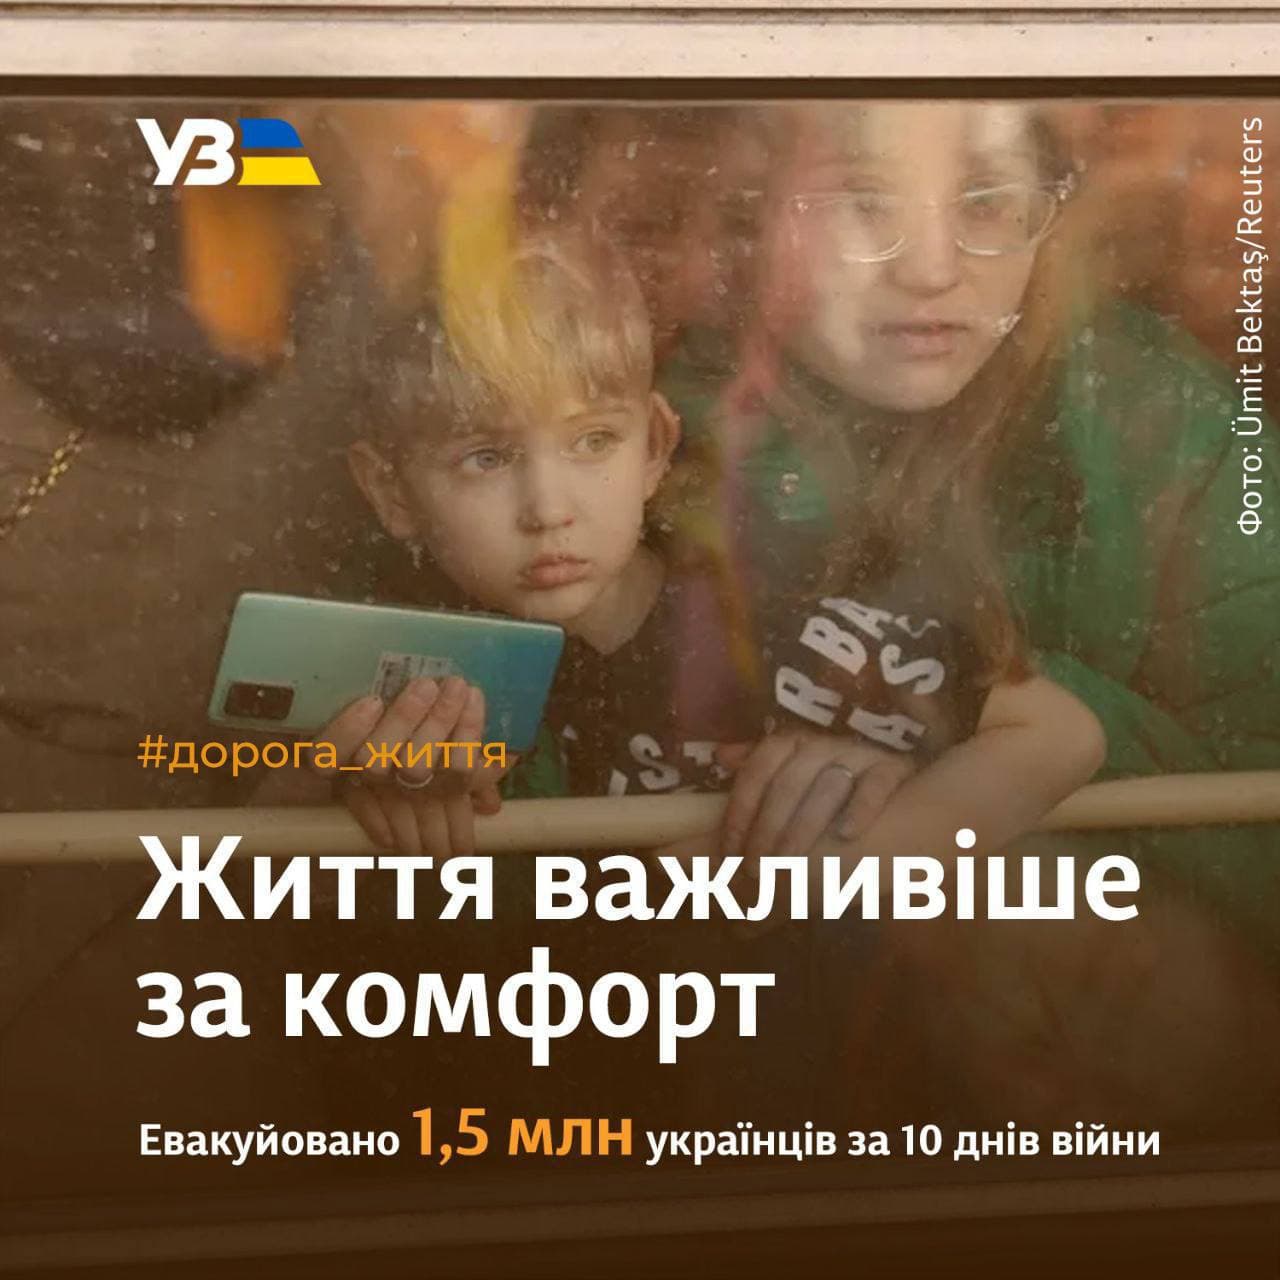 За 10 днів Укрзалізниця евакуювала півтора мільйона українців